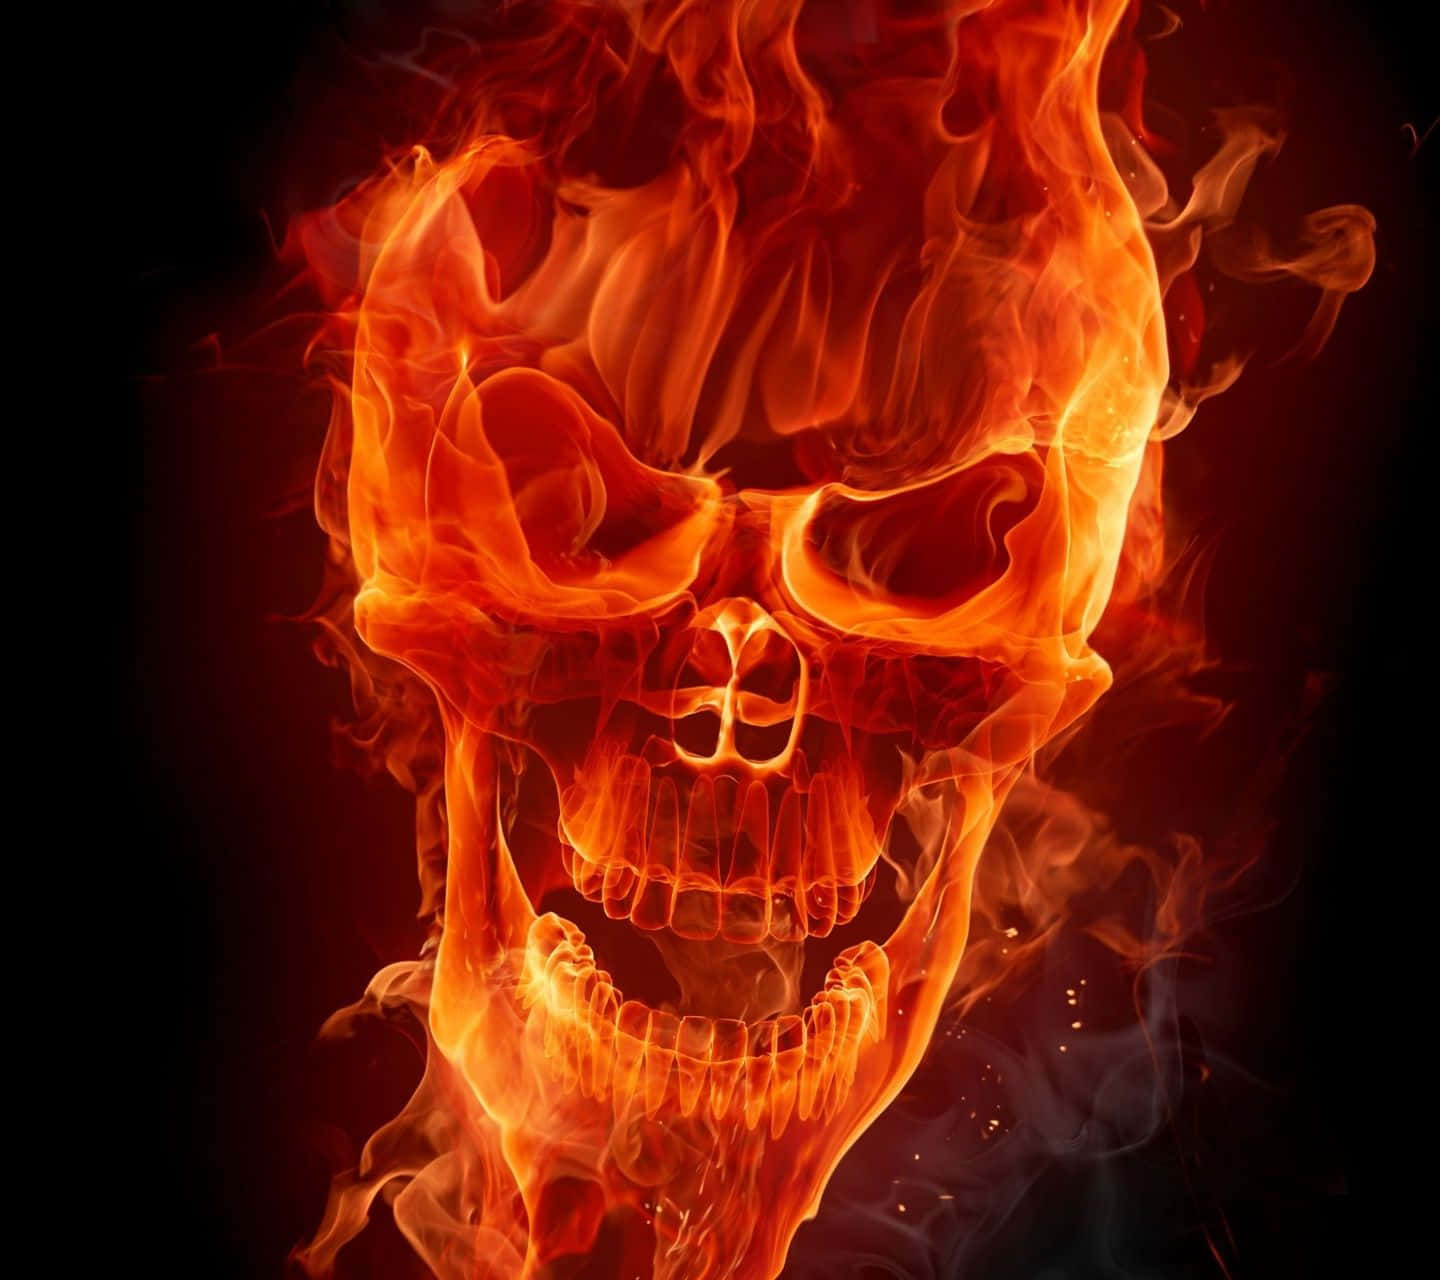 Fire Skull 1440 X 1280 Wallpaper